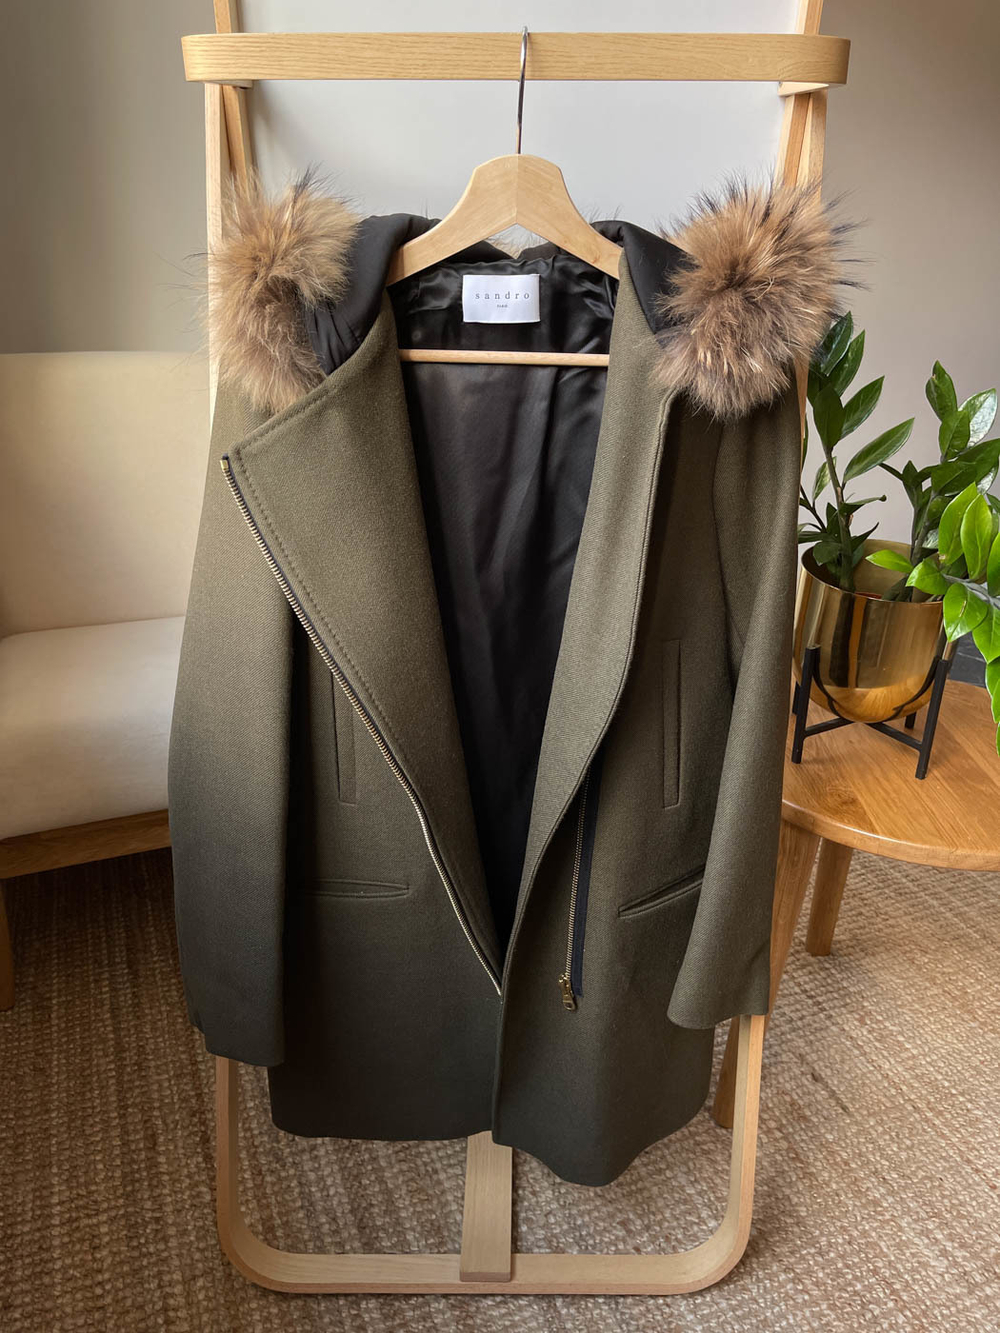 Новое шерстяное пальто Sandro, S